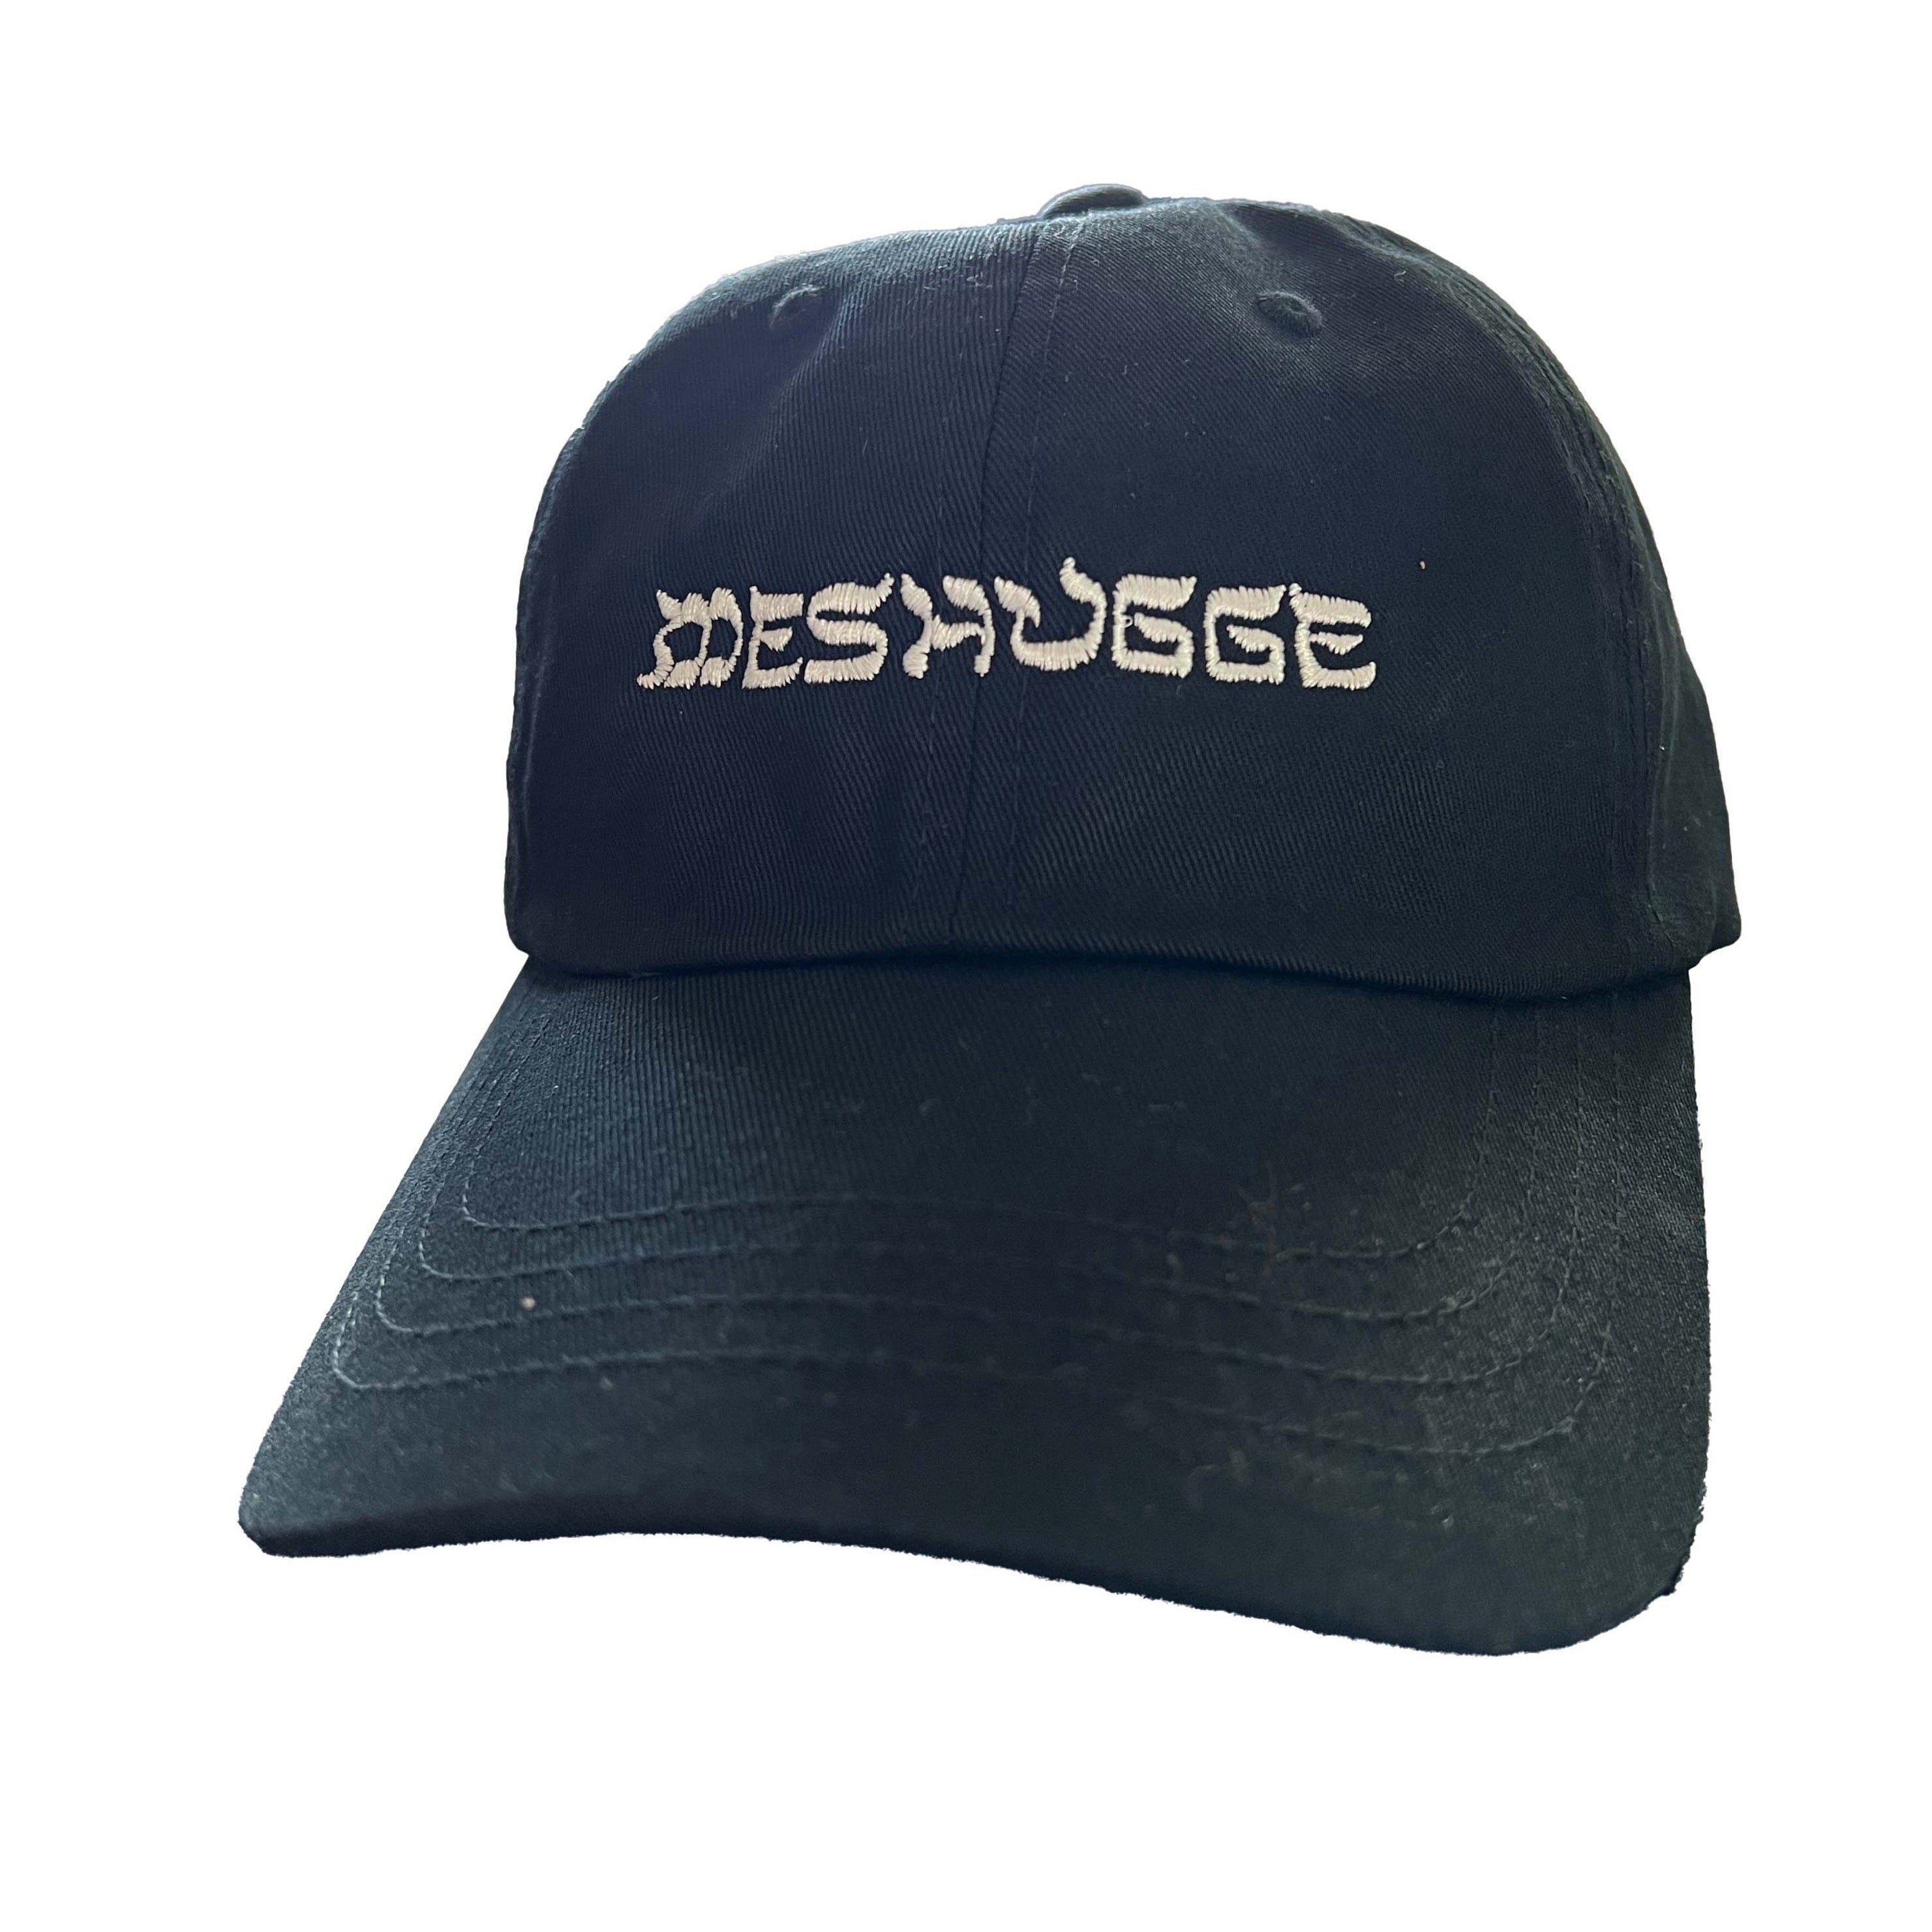 The Original '90s Cap – Meshugge